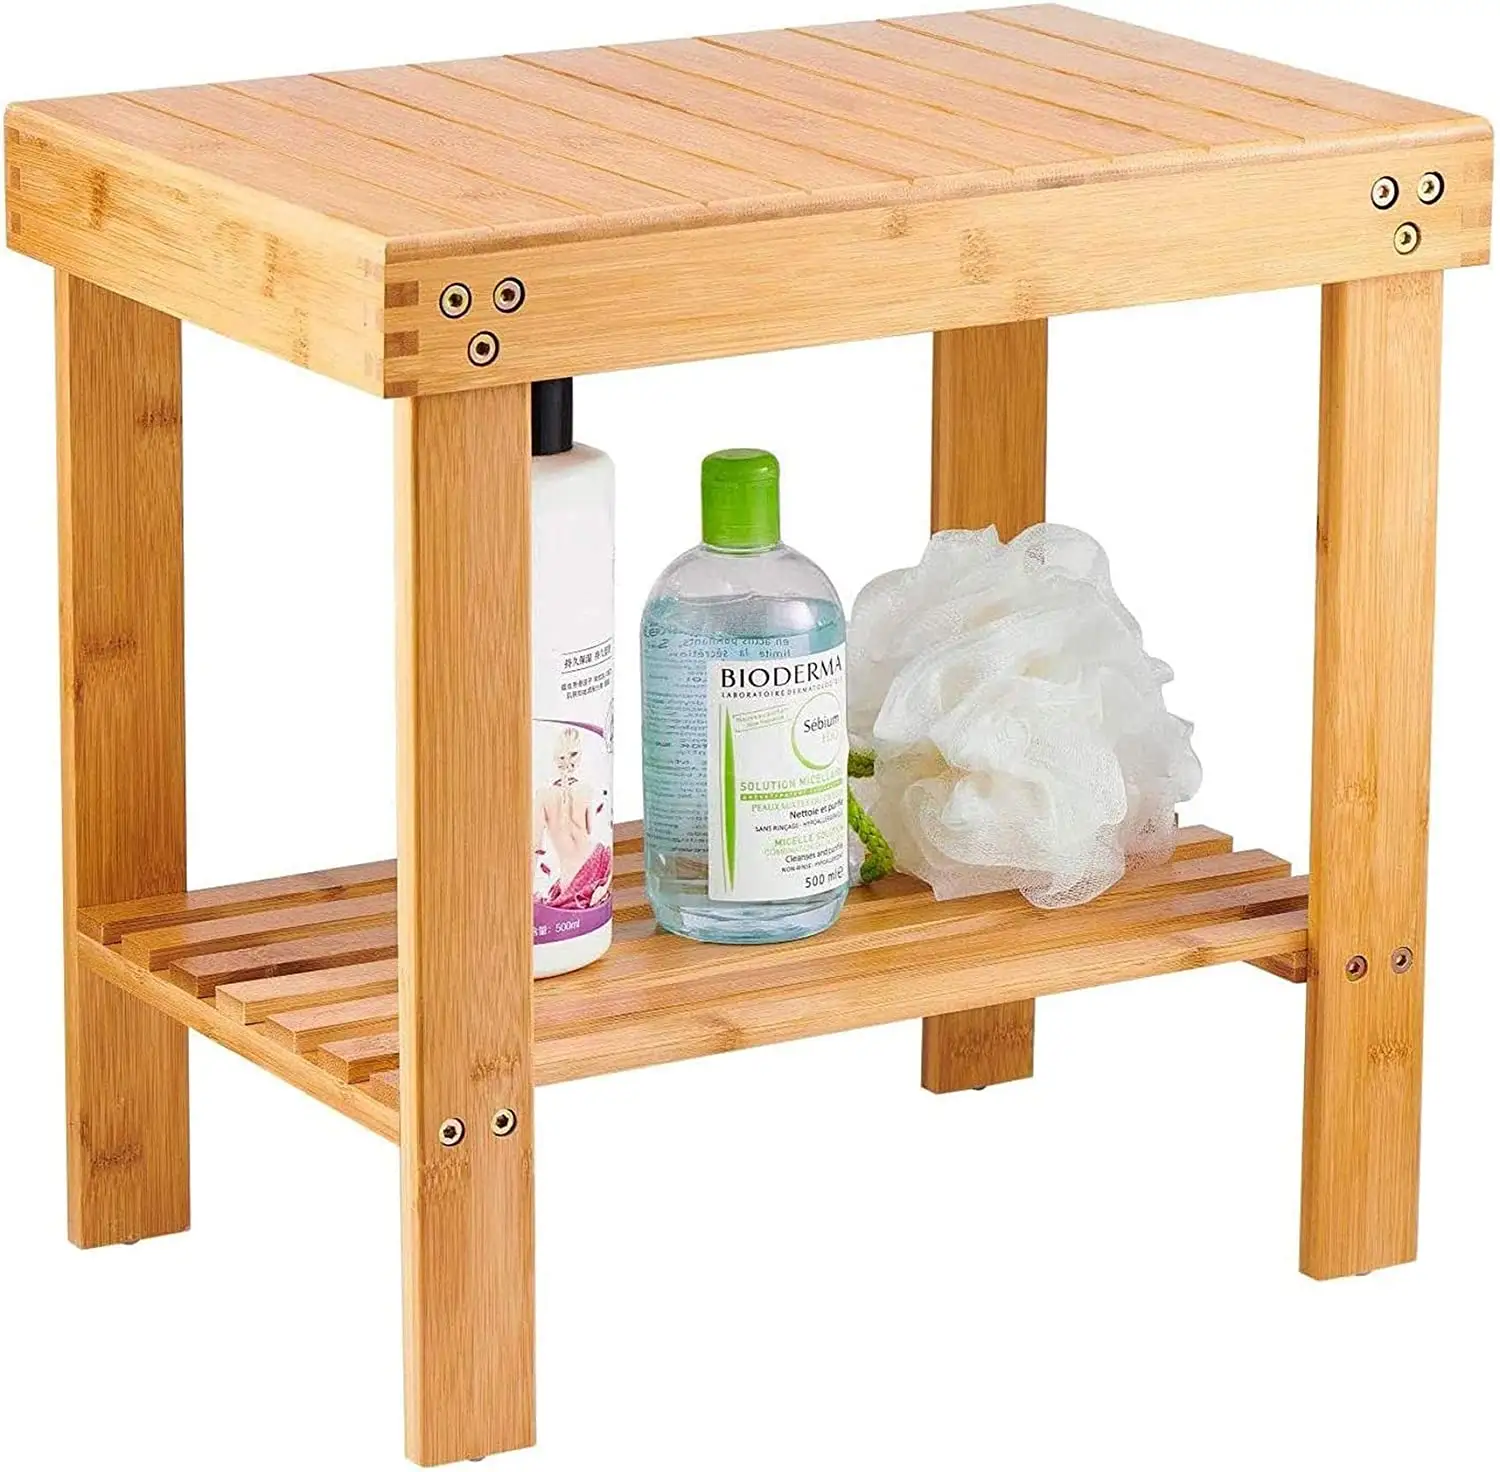 Bambus Spa Bank Holz Sitz Hocker Fuß stütze Rasier hocker mit rutsch festen Füßen Aufbewahrung regal für Shampoo Handtuch